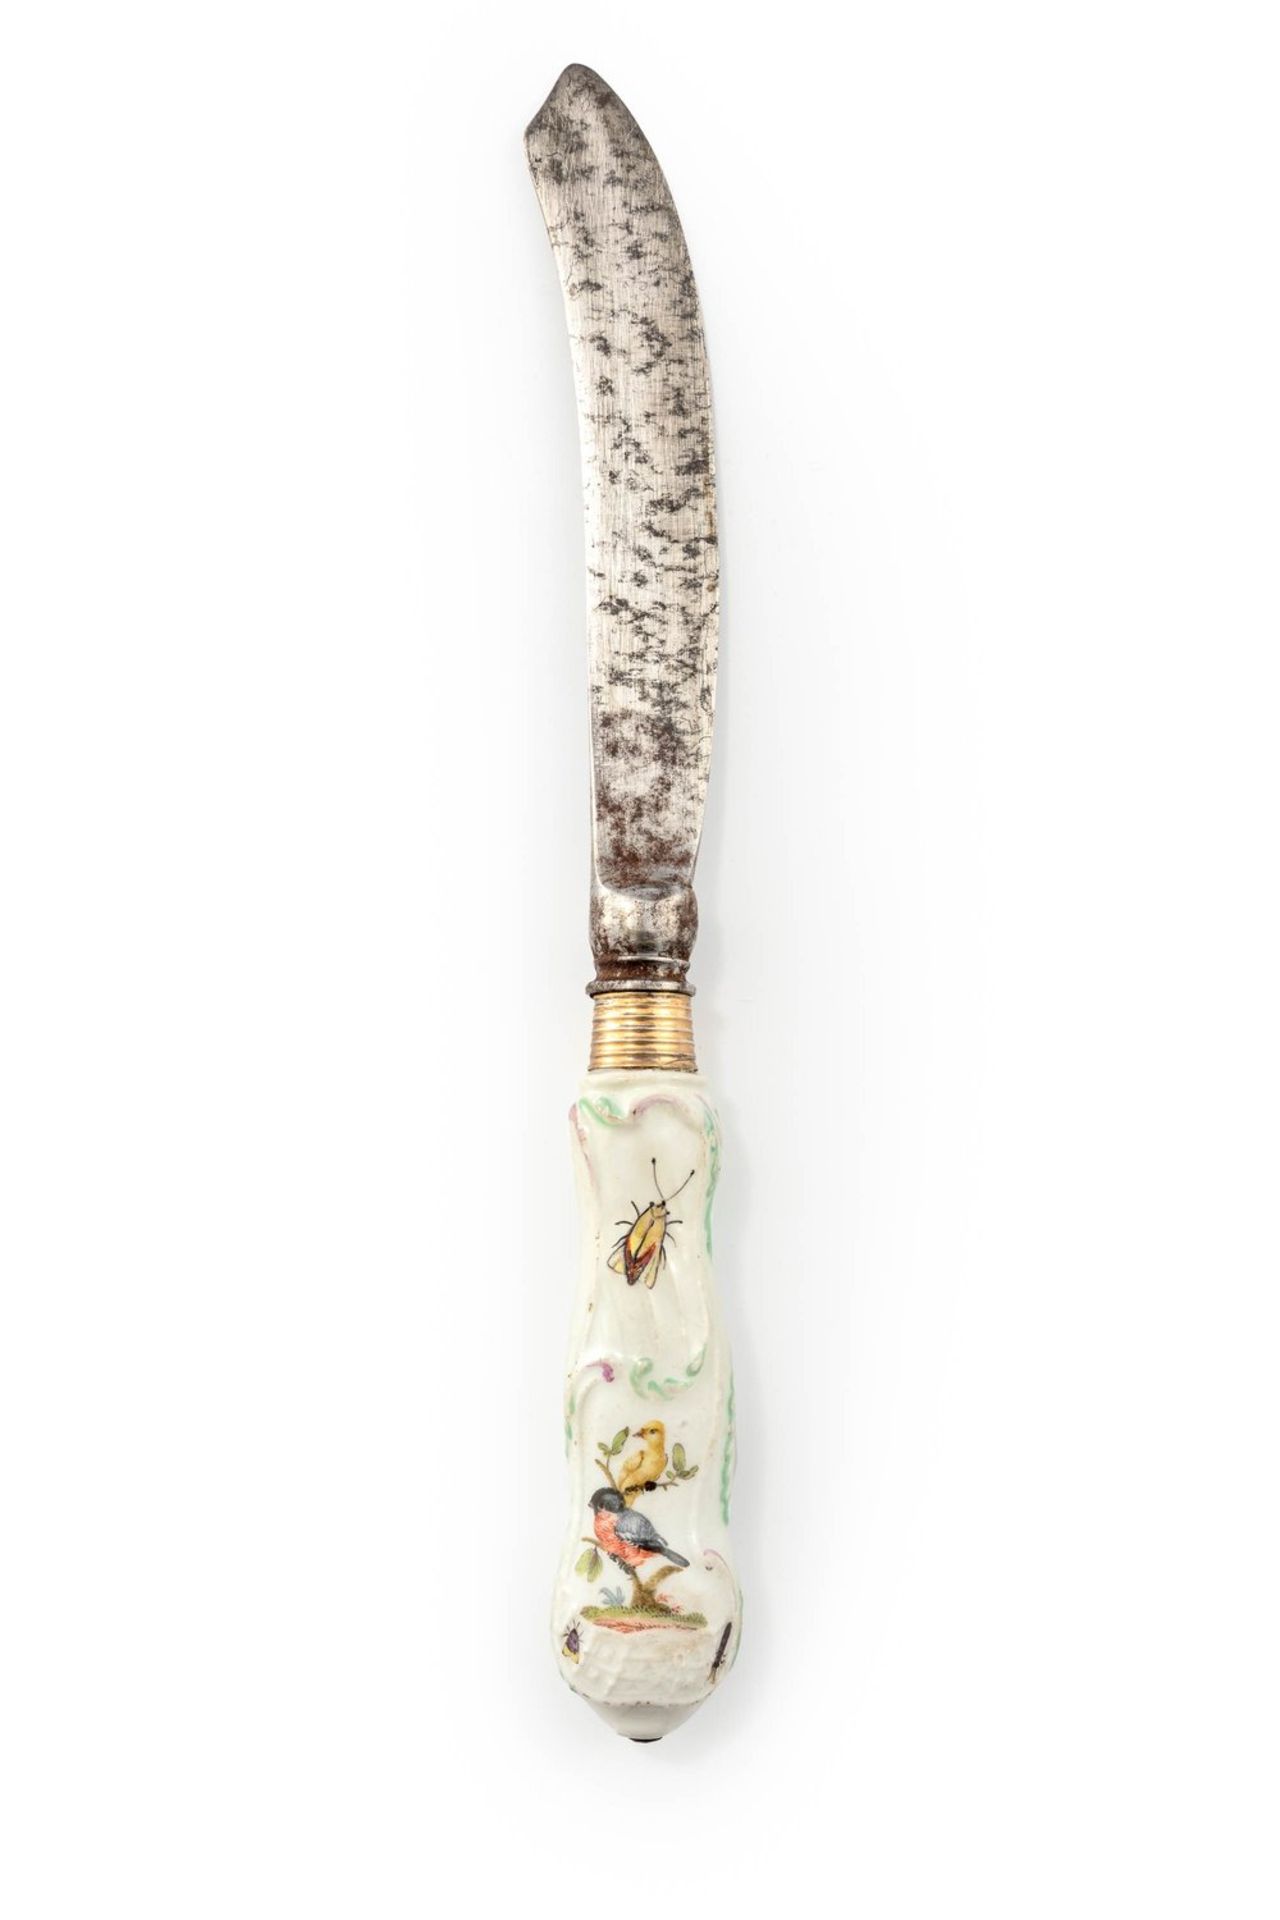 Messer für das Service mit Vögeln und Insekten für Friedrich den GroßenMeissen, um 1760<